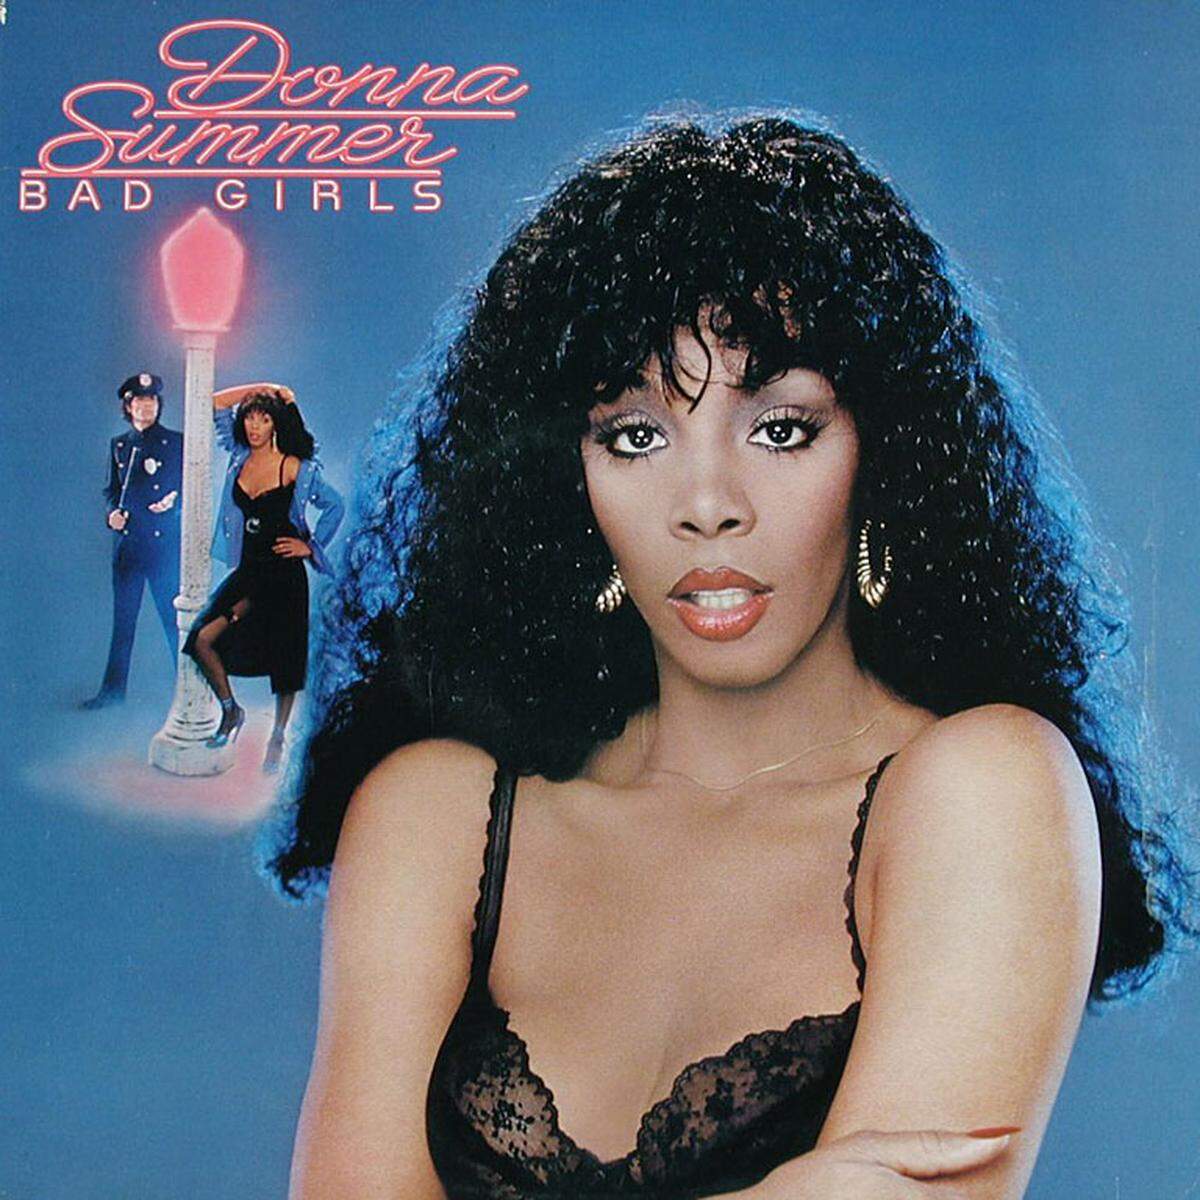 1979 war das Jahr des Disco. Donna Summers' Album "Bad Girls" - von Giorgio Moroder und Pete Bellotte produziert - gehört zu den Aushängeschildern der Ära.